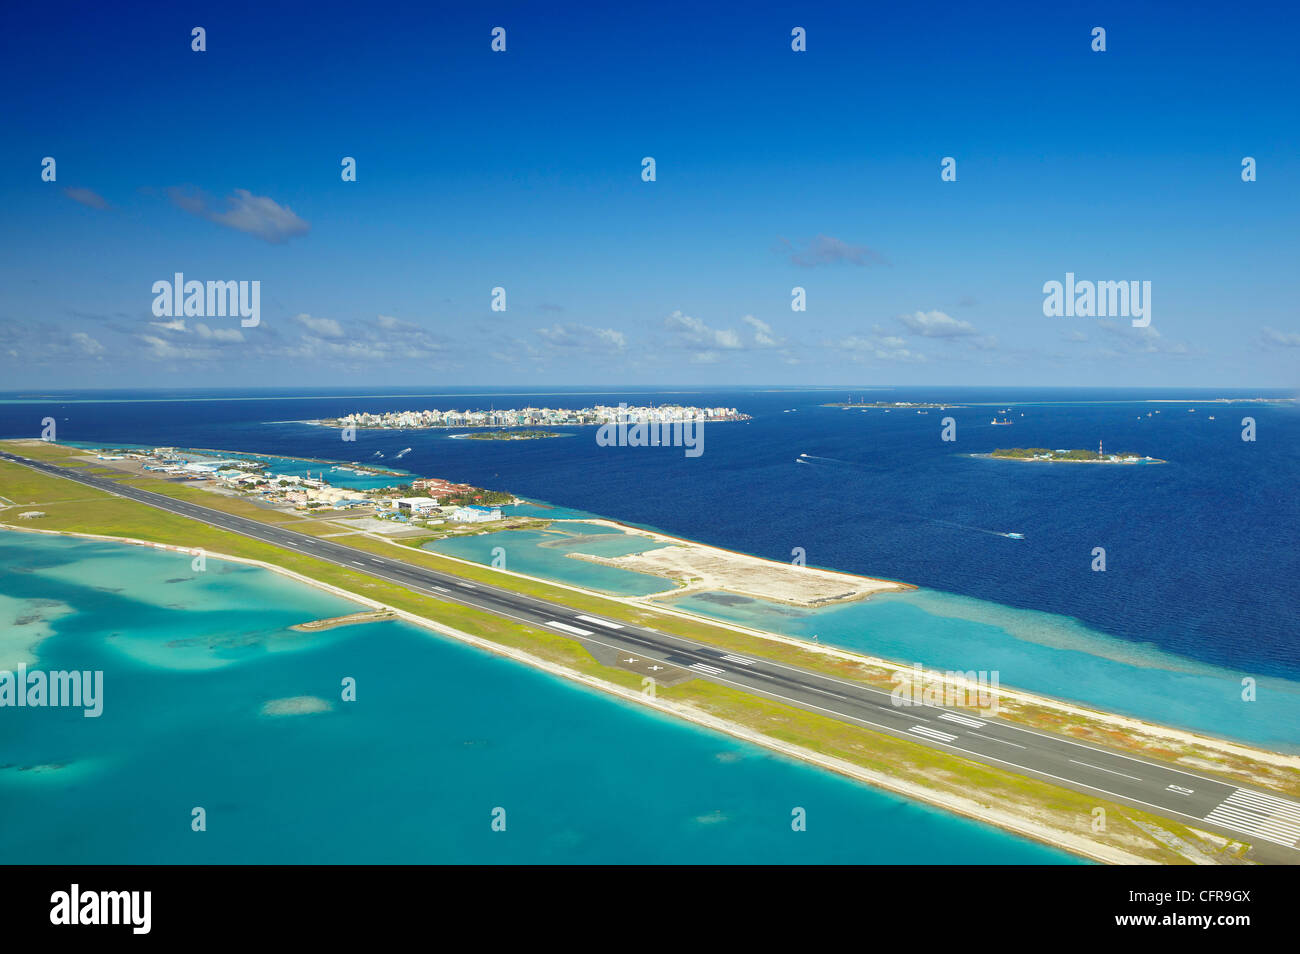 Zum internationalen Flughafen Male und Male, Malediven, Indischer Ozean, Asien Stockfoto